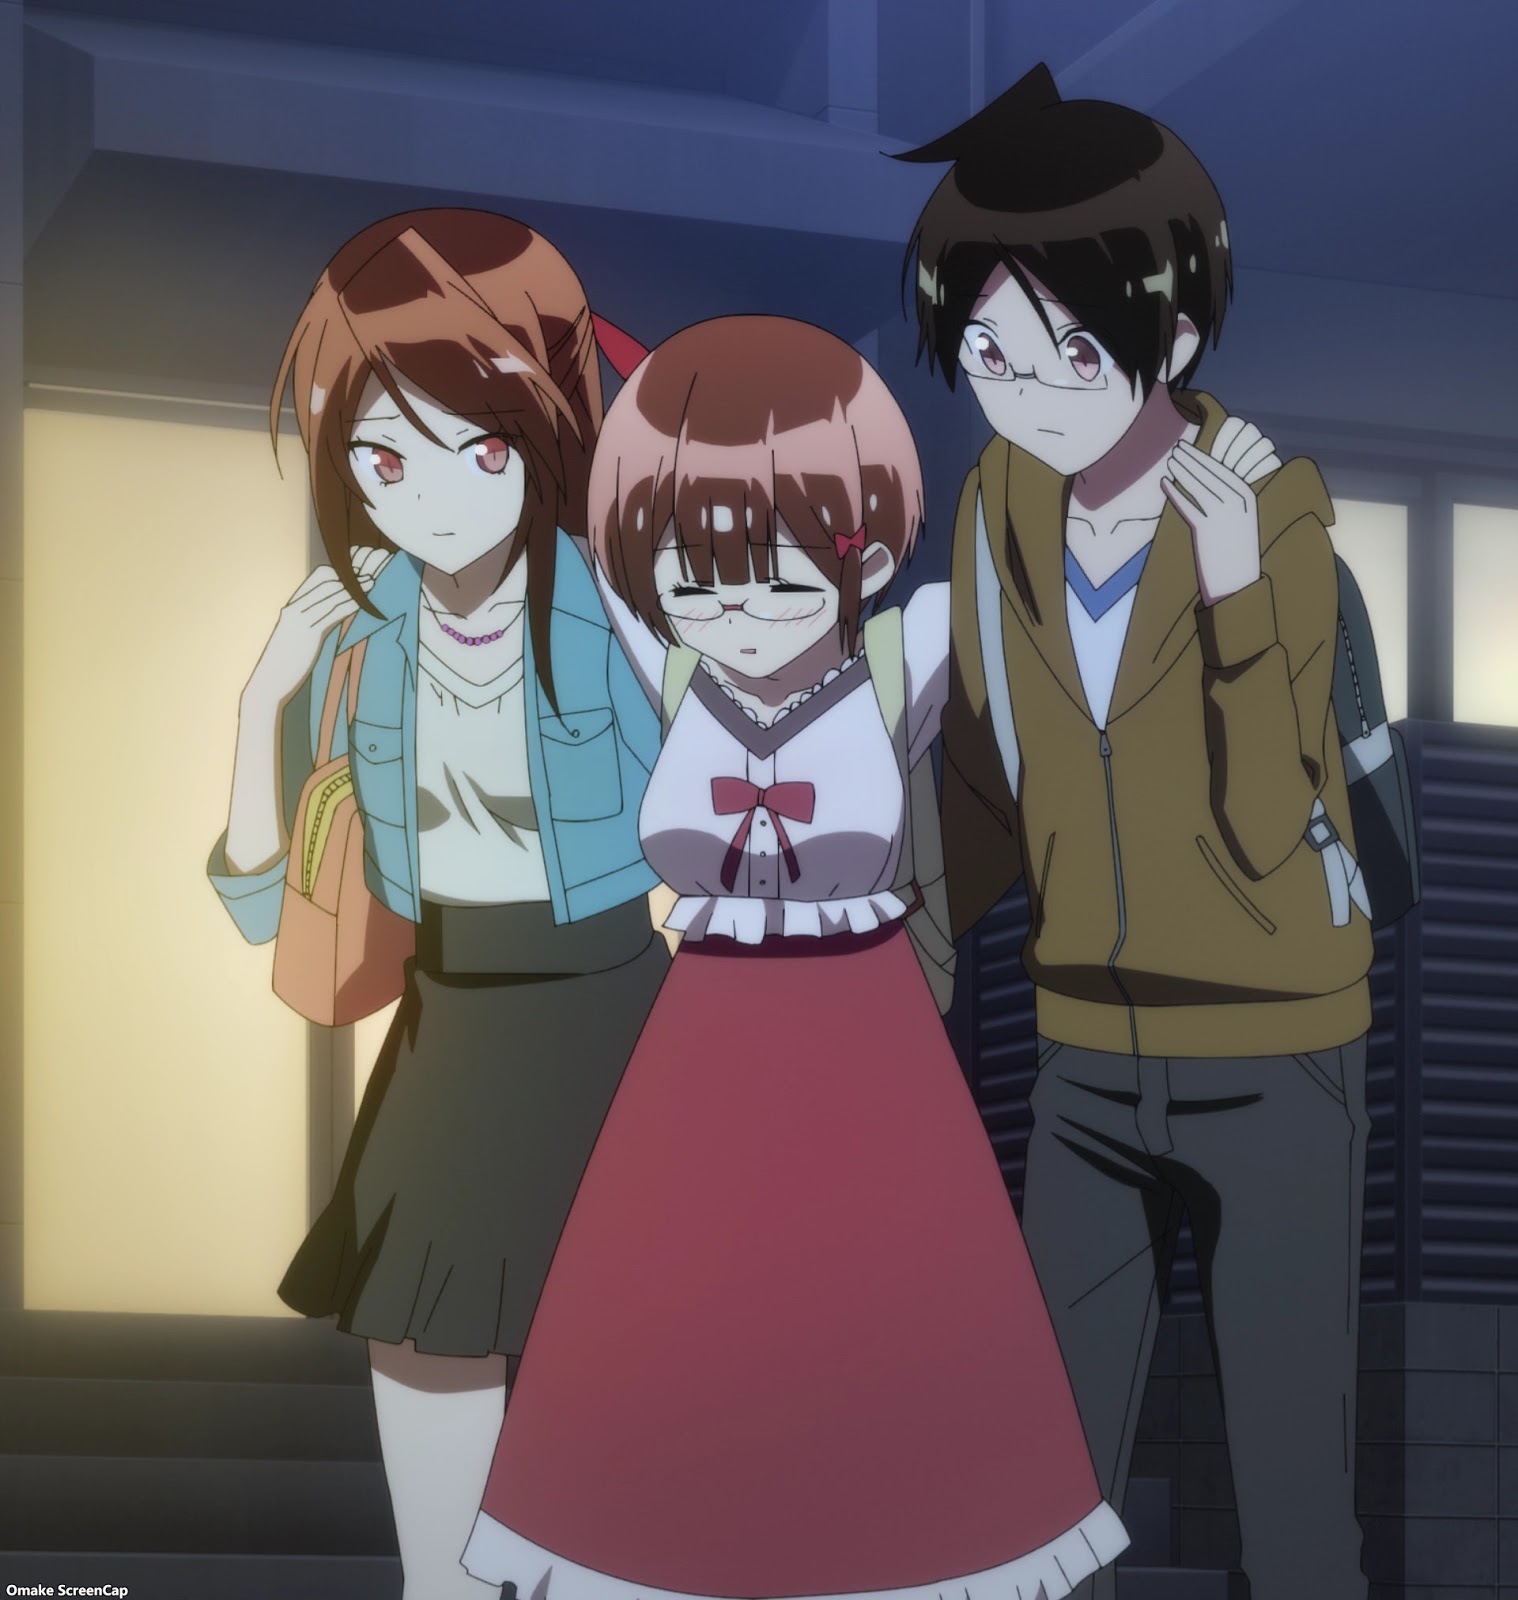 Bokutachi wa Benkyou ga Dekinai (We Can't Study) Review (Spoiler Free) –  Umai Yomu Anime Blog